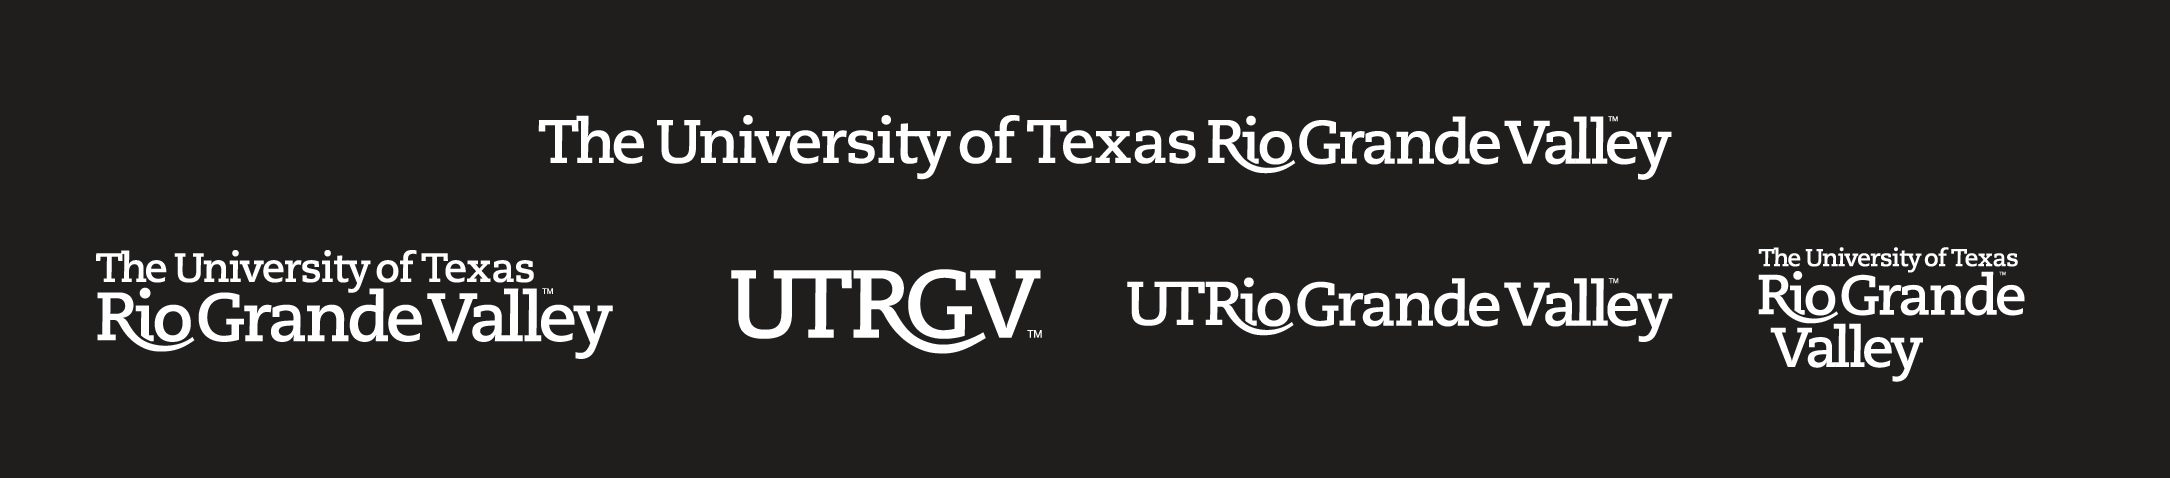 UTRGV Logos black